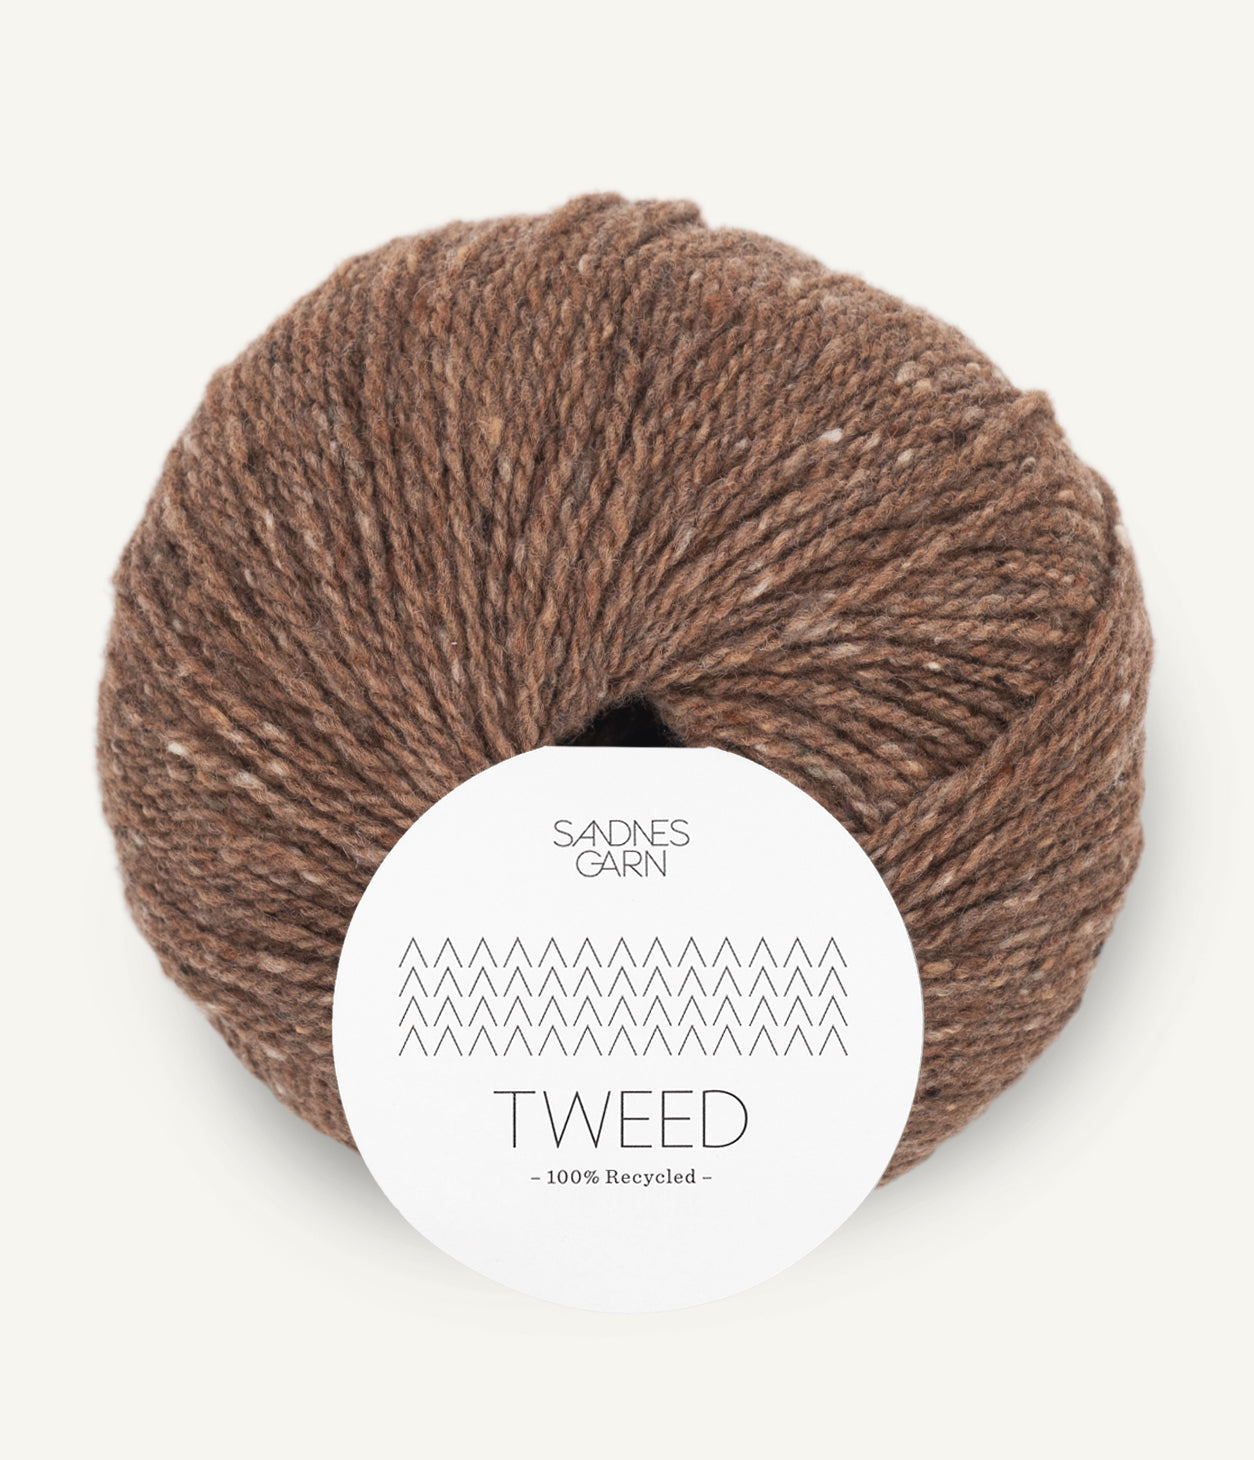 Sandnes Garn Tweed recycled